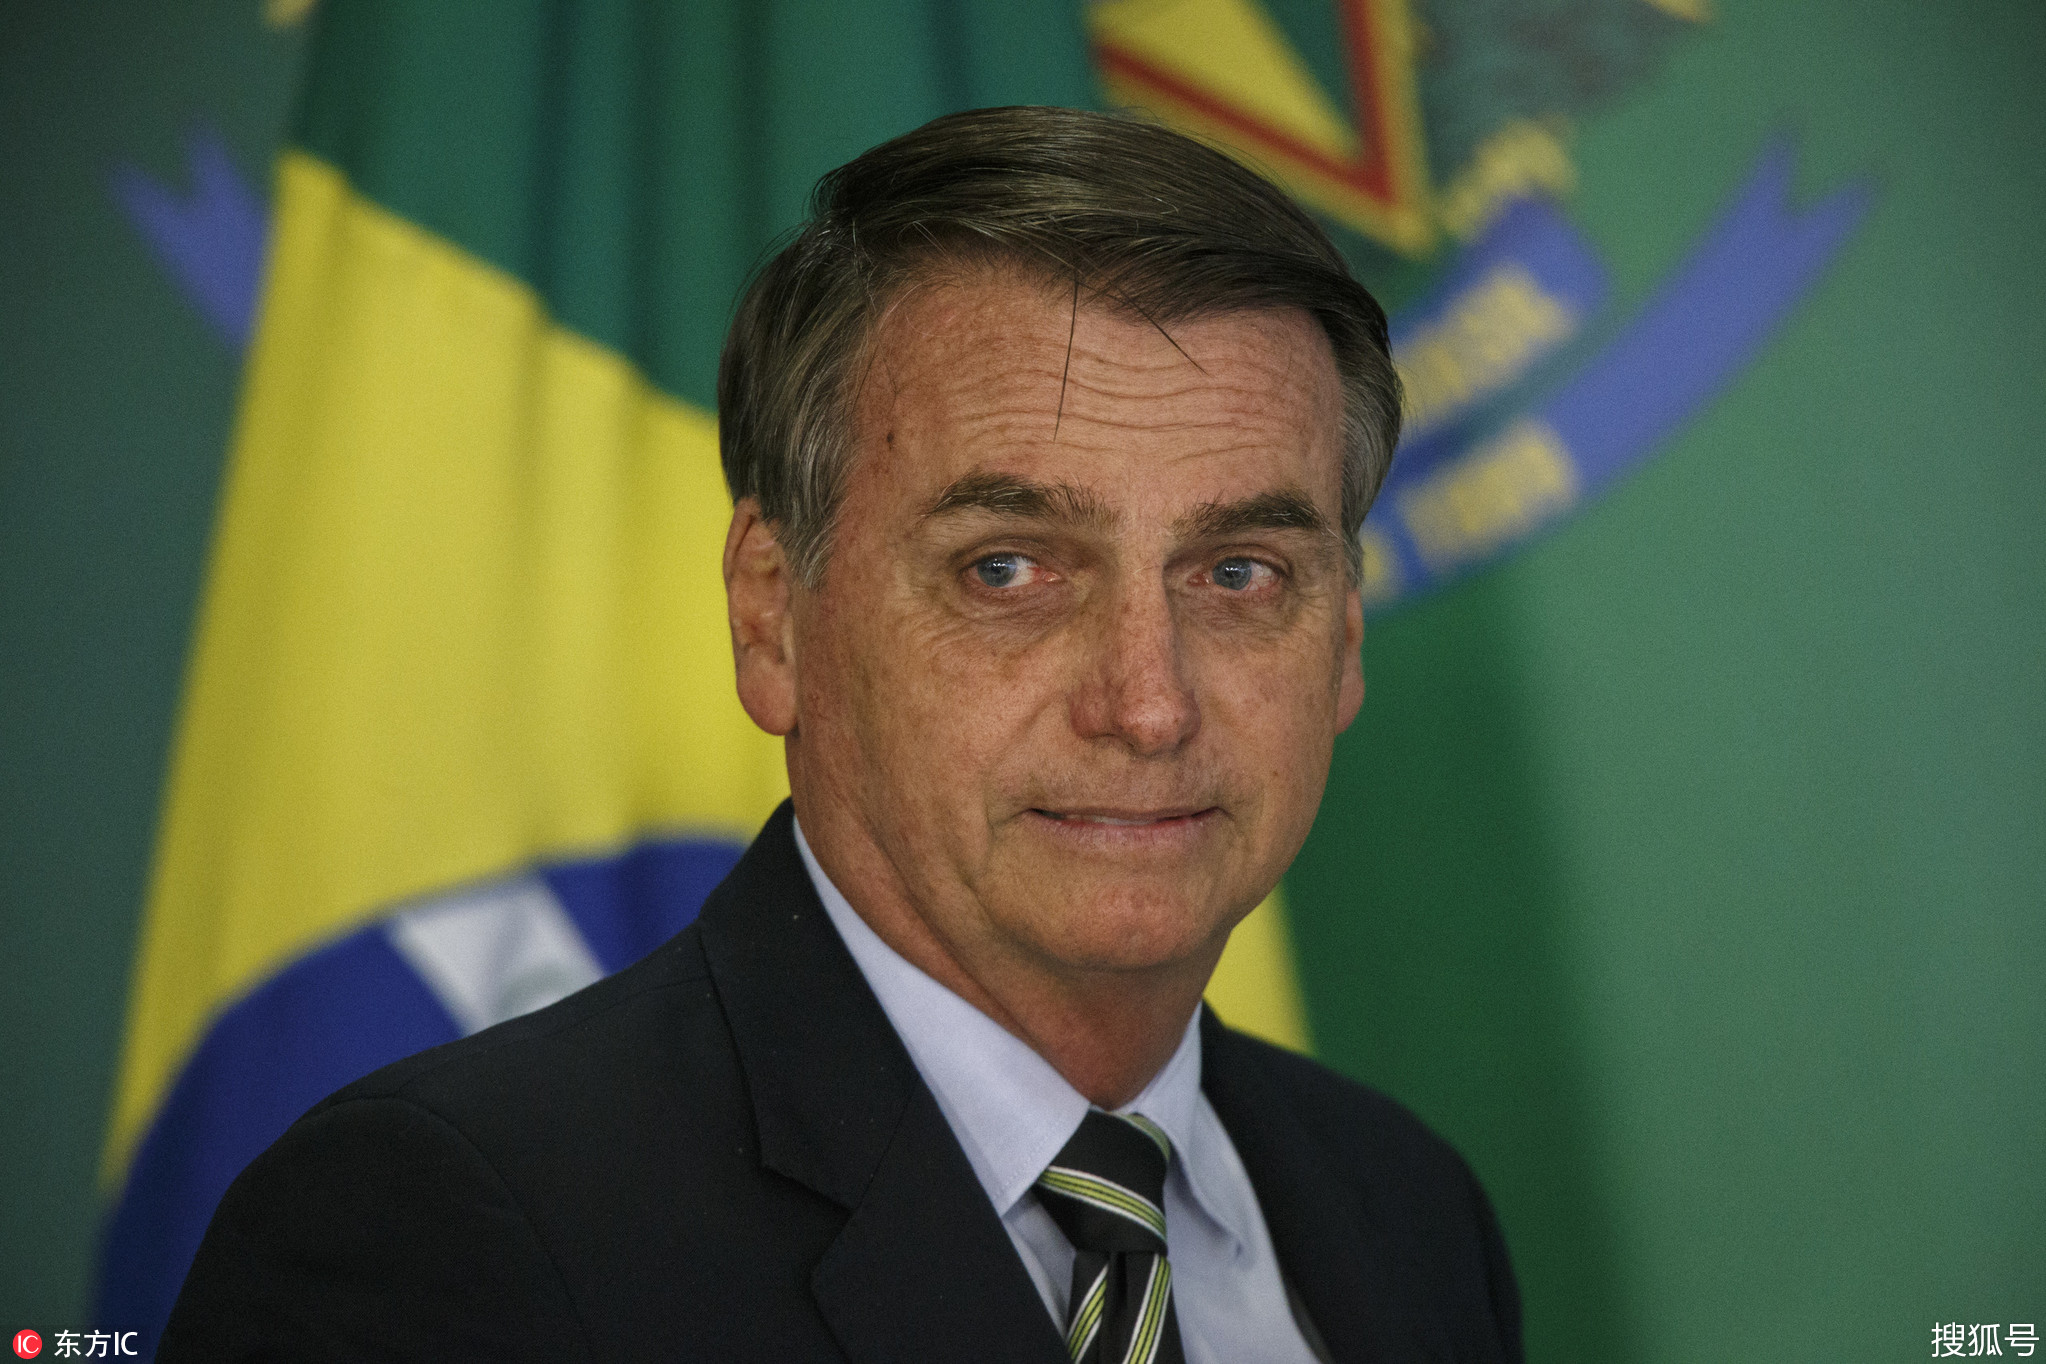 1/ 12 当地时间2019年1月15日,巴西首都巴西利亚,巴西新任总统